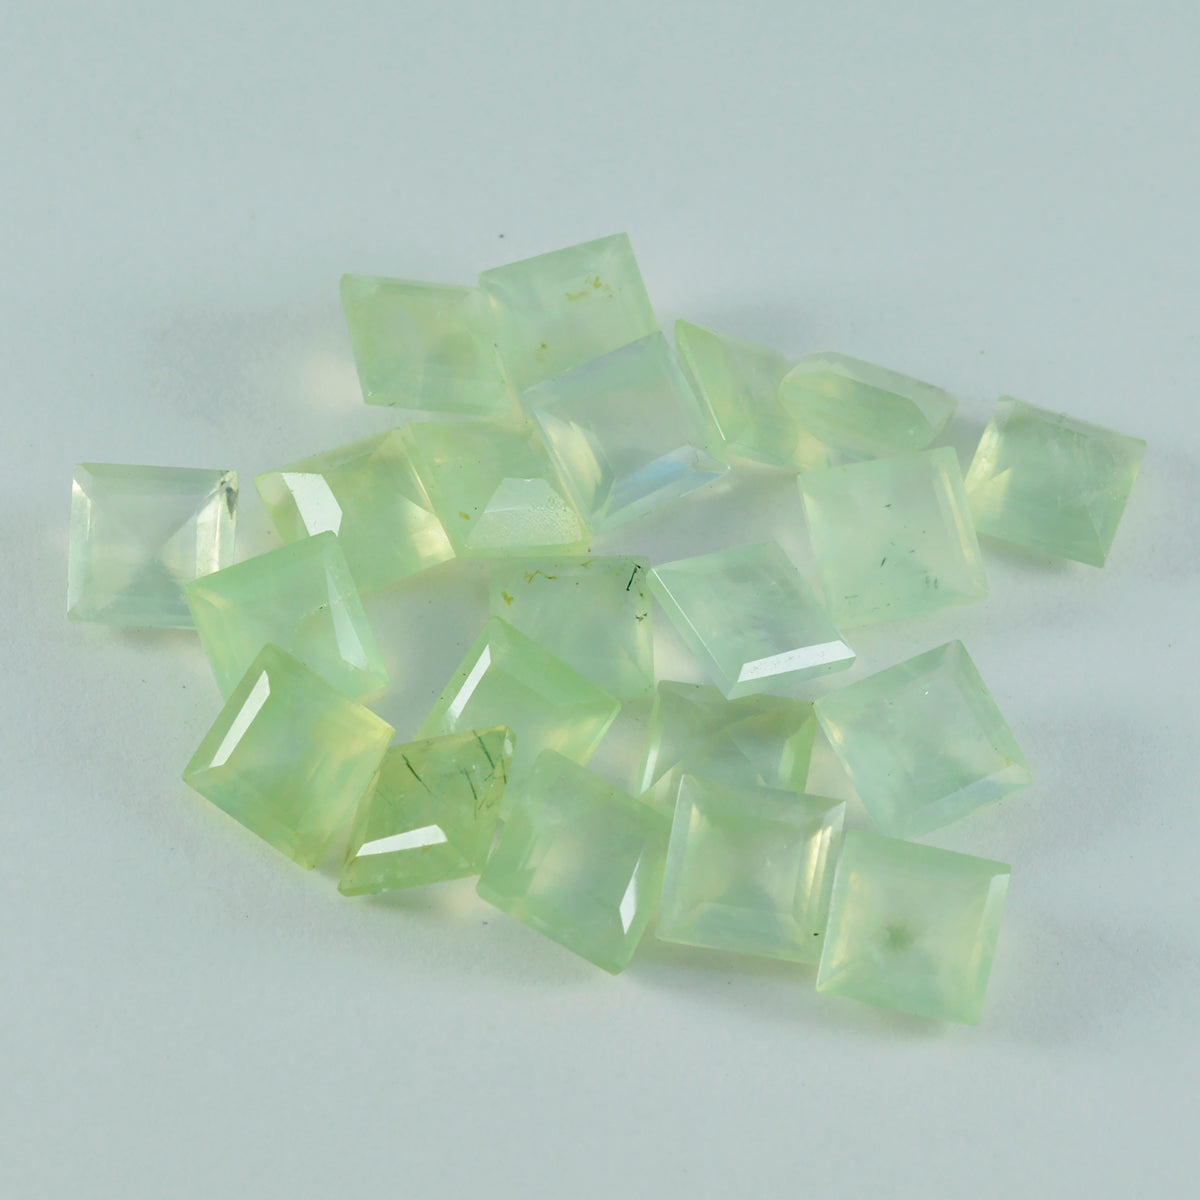 riyogems 1pc préhnite verte à facettes 4x4 mm forme carrée gemme de qualité attrayante